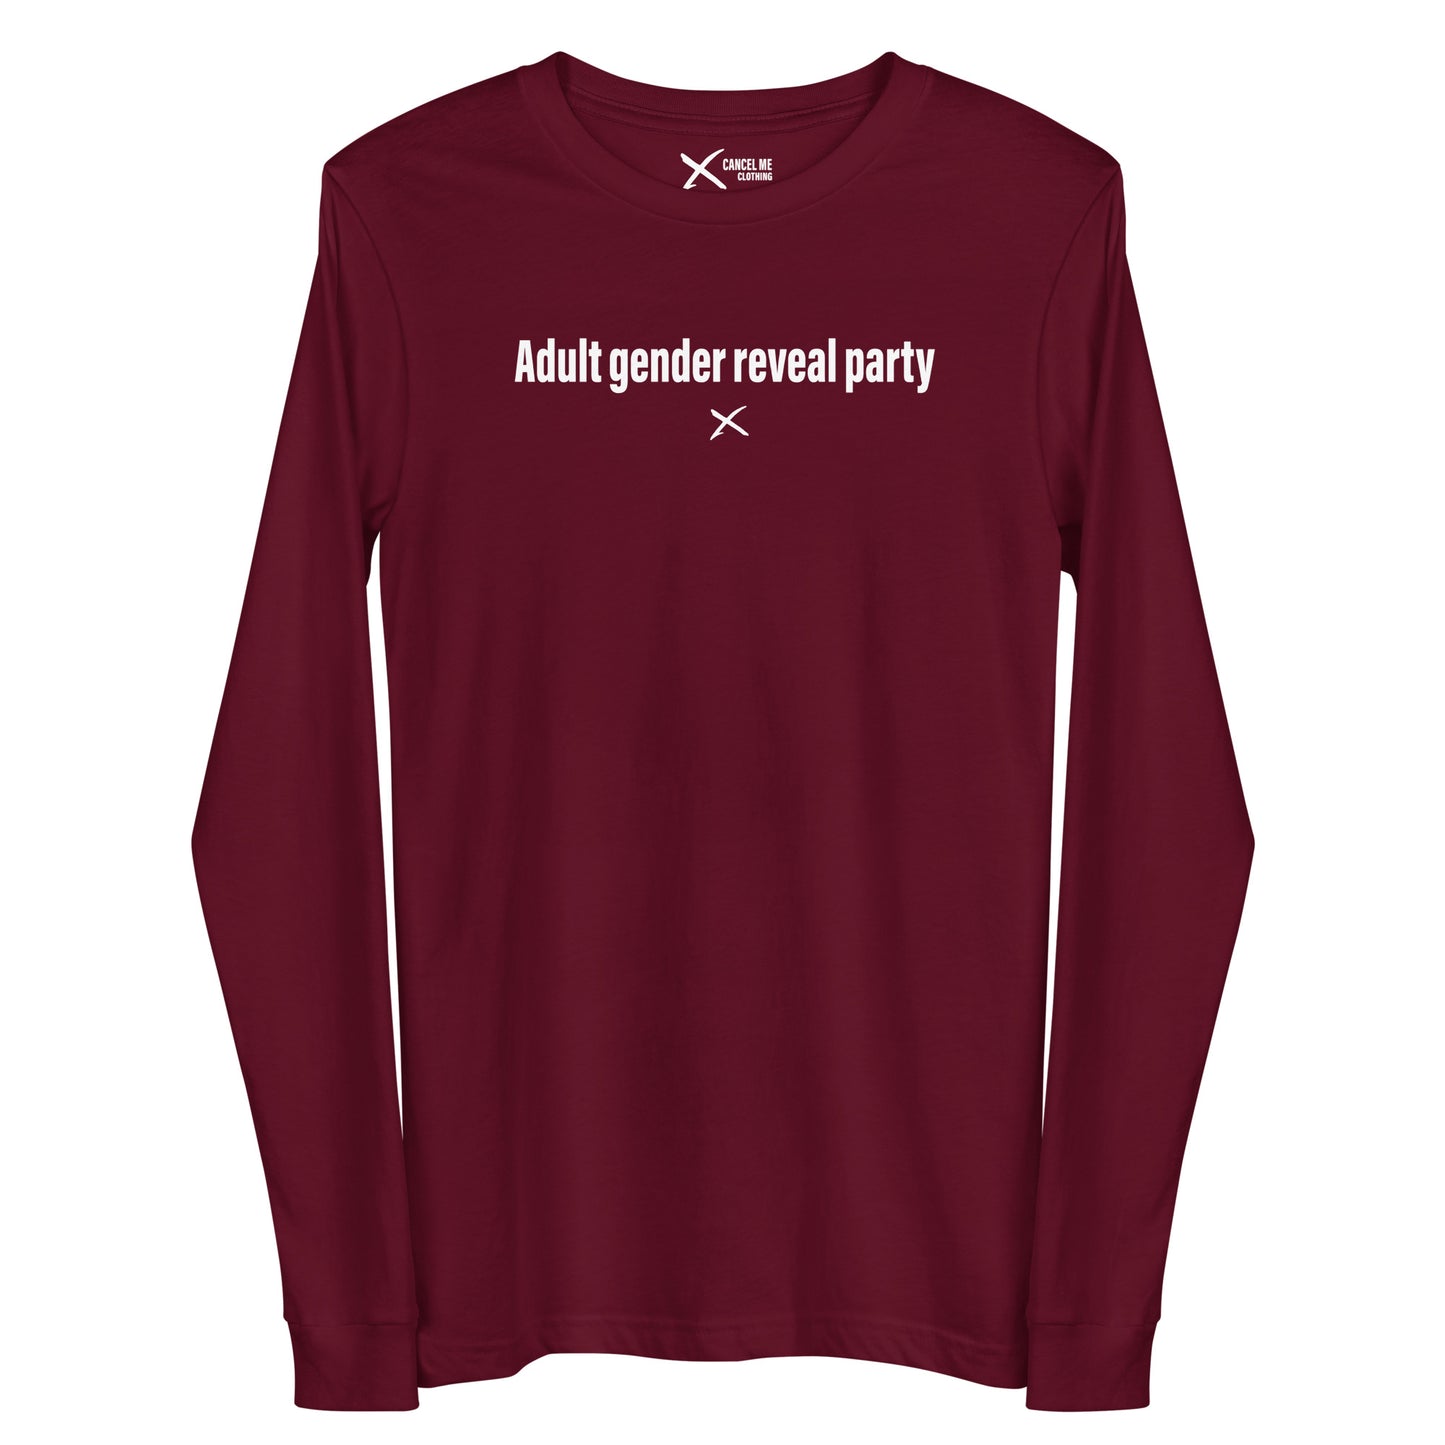 Adult gender reveal party - Longsleeve